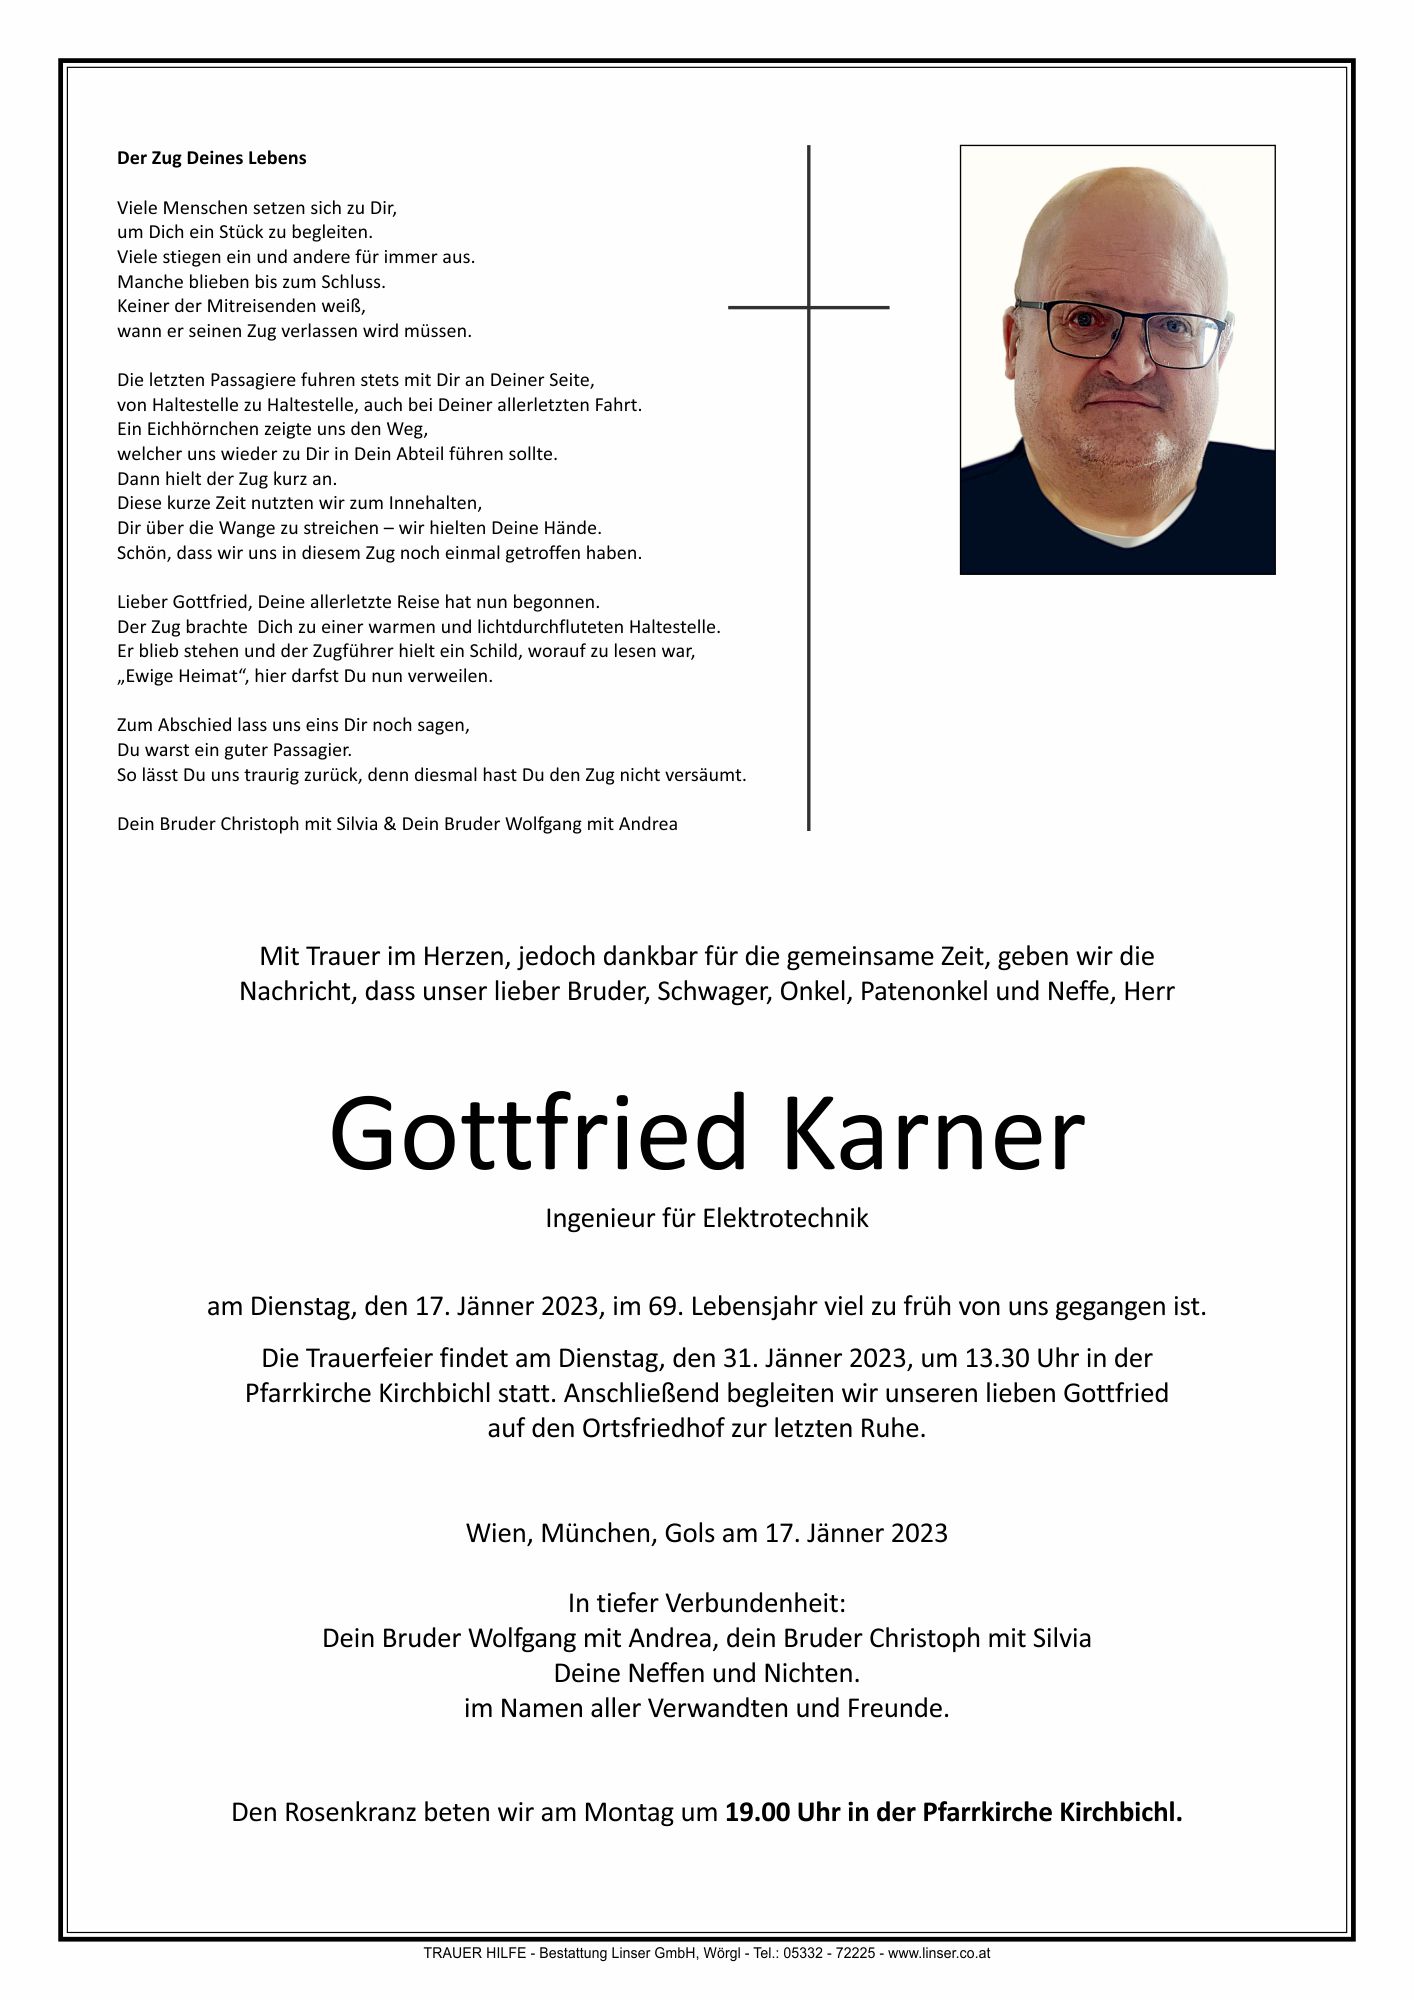 Gottfried Karner